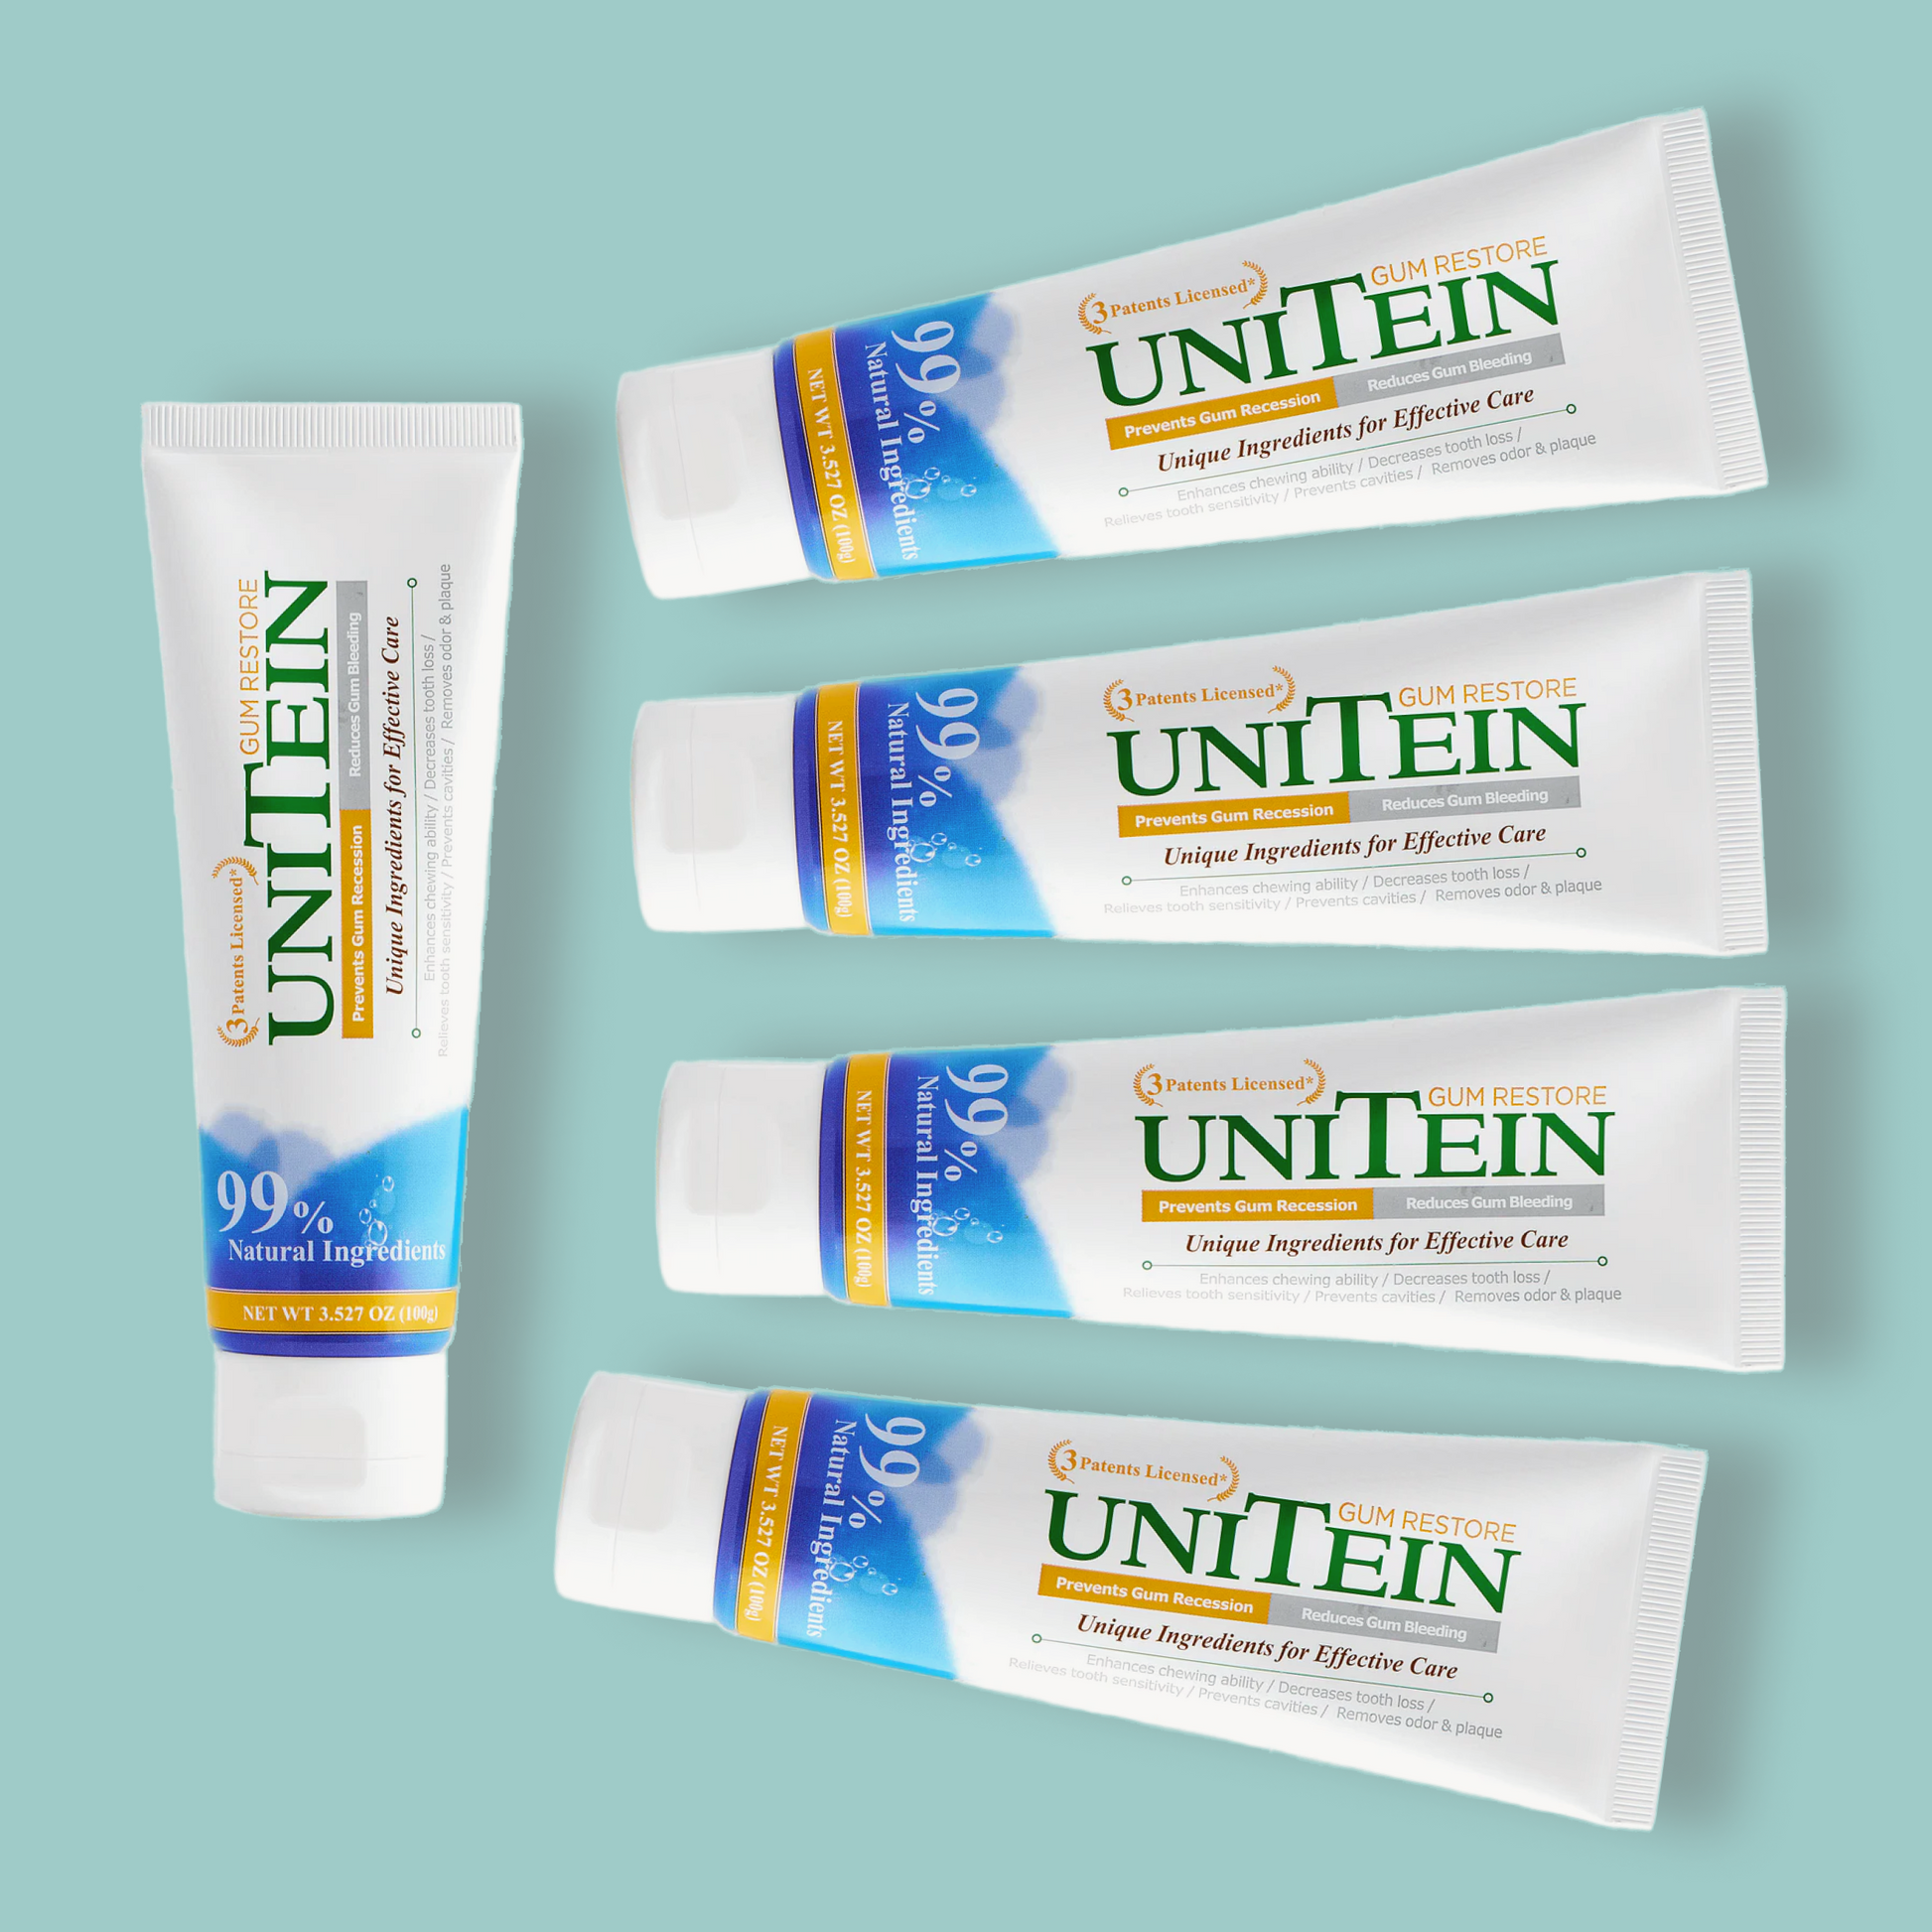 UNITEIN Gum Restore Toothpaste